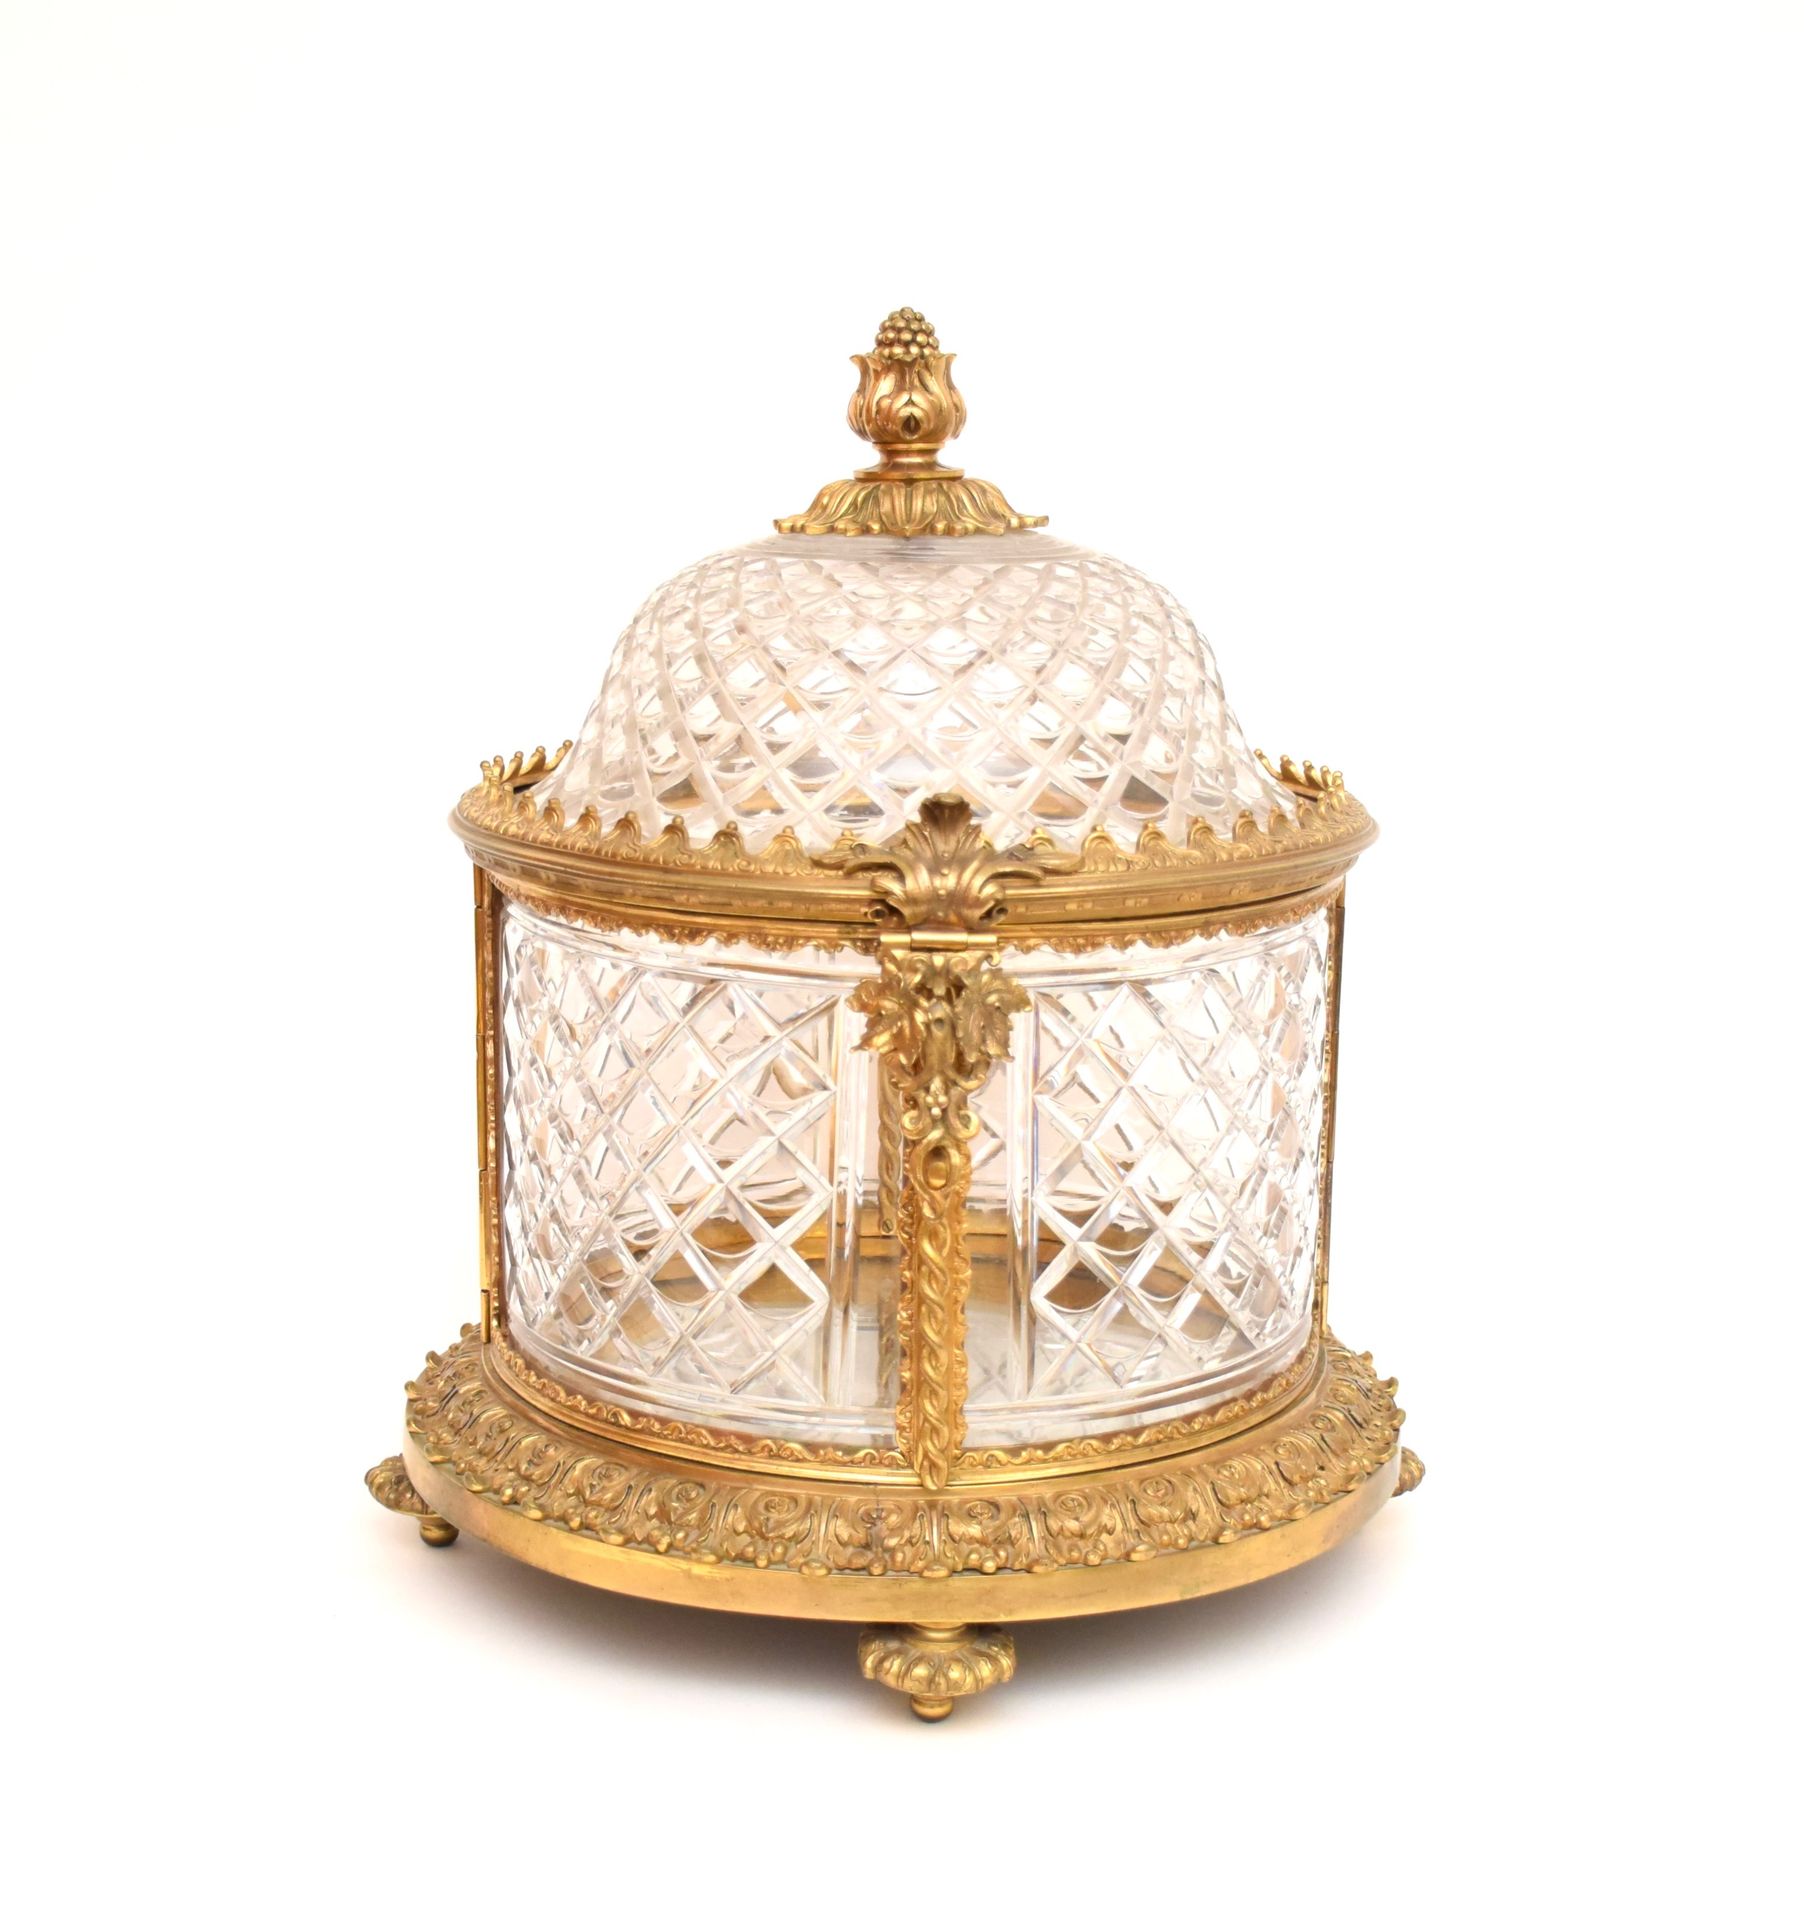 Null 酒柜

鎏金青铜和钻石切割水晶，装饰有刺桐叶，心形条纹和一个大的éclatée。

拿破仑三世风格

高度 : 40 - 直径 : 34 cm